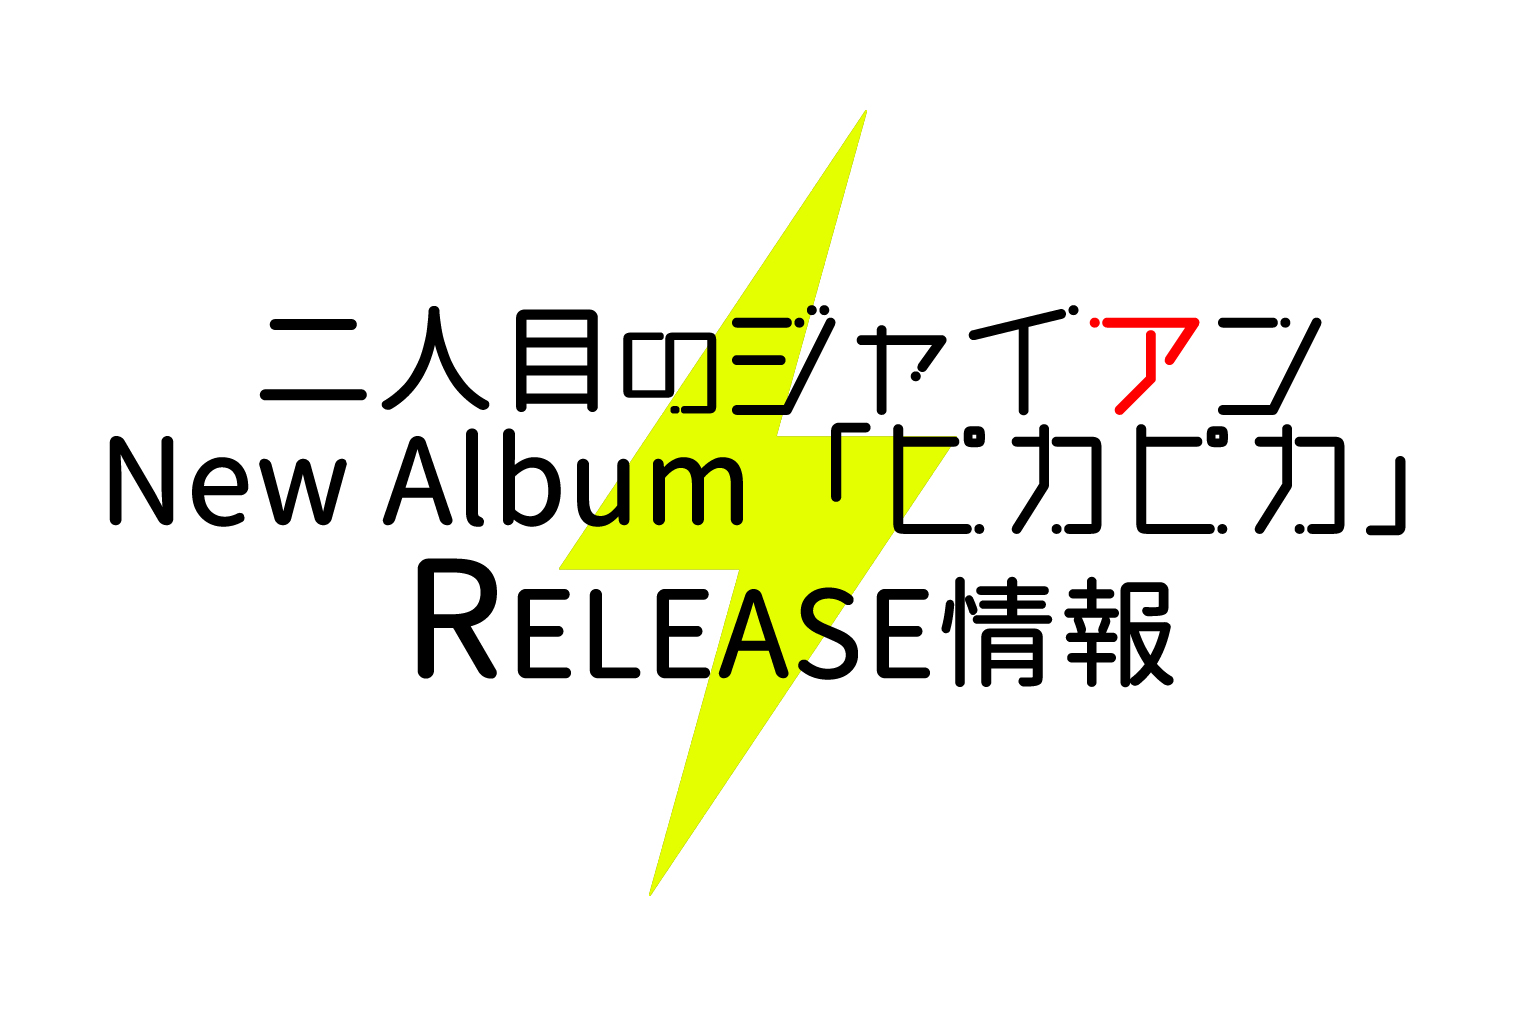 New Album「ピカピカ」RELEASE 情報